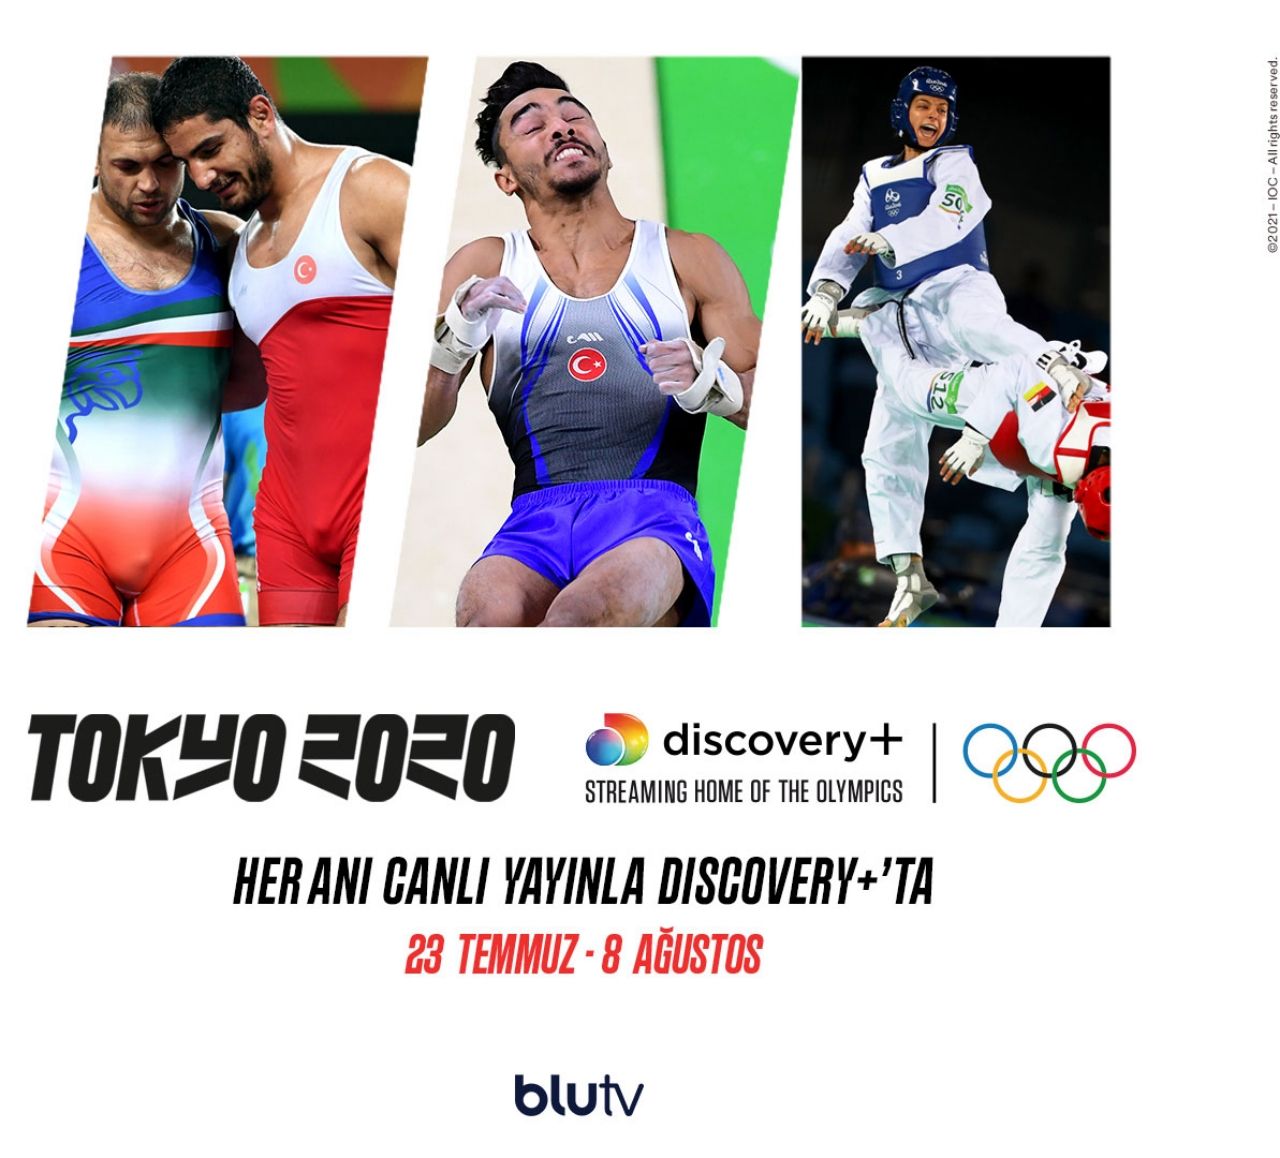 BluTV Temmuz ayı programı açıklandı! Tokyo 2020 Olimpiyatları da BluTV'de - Sayfa:2